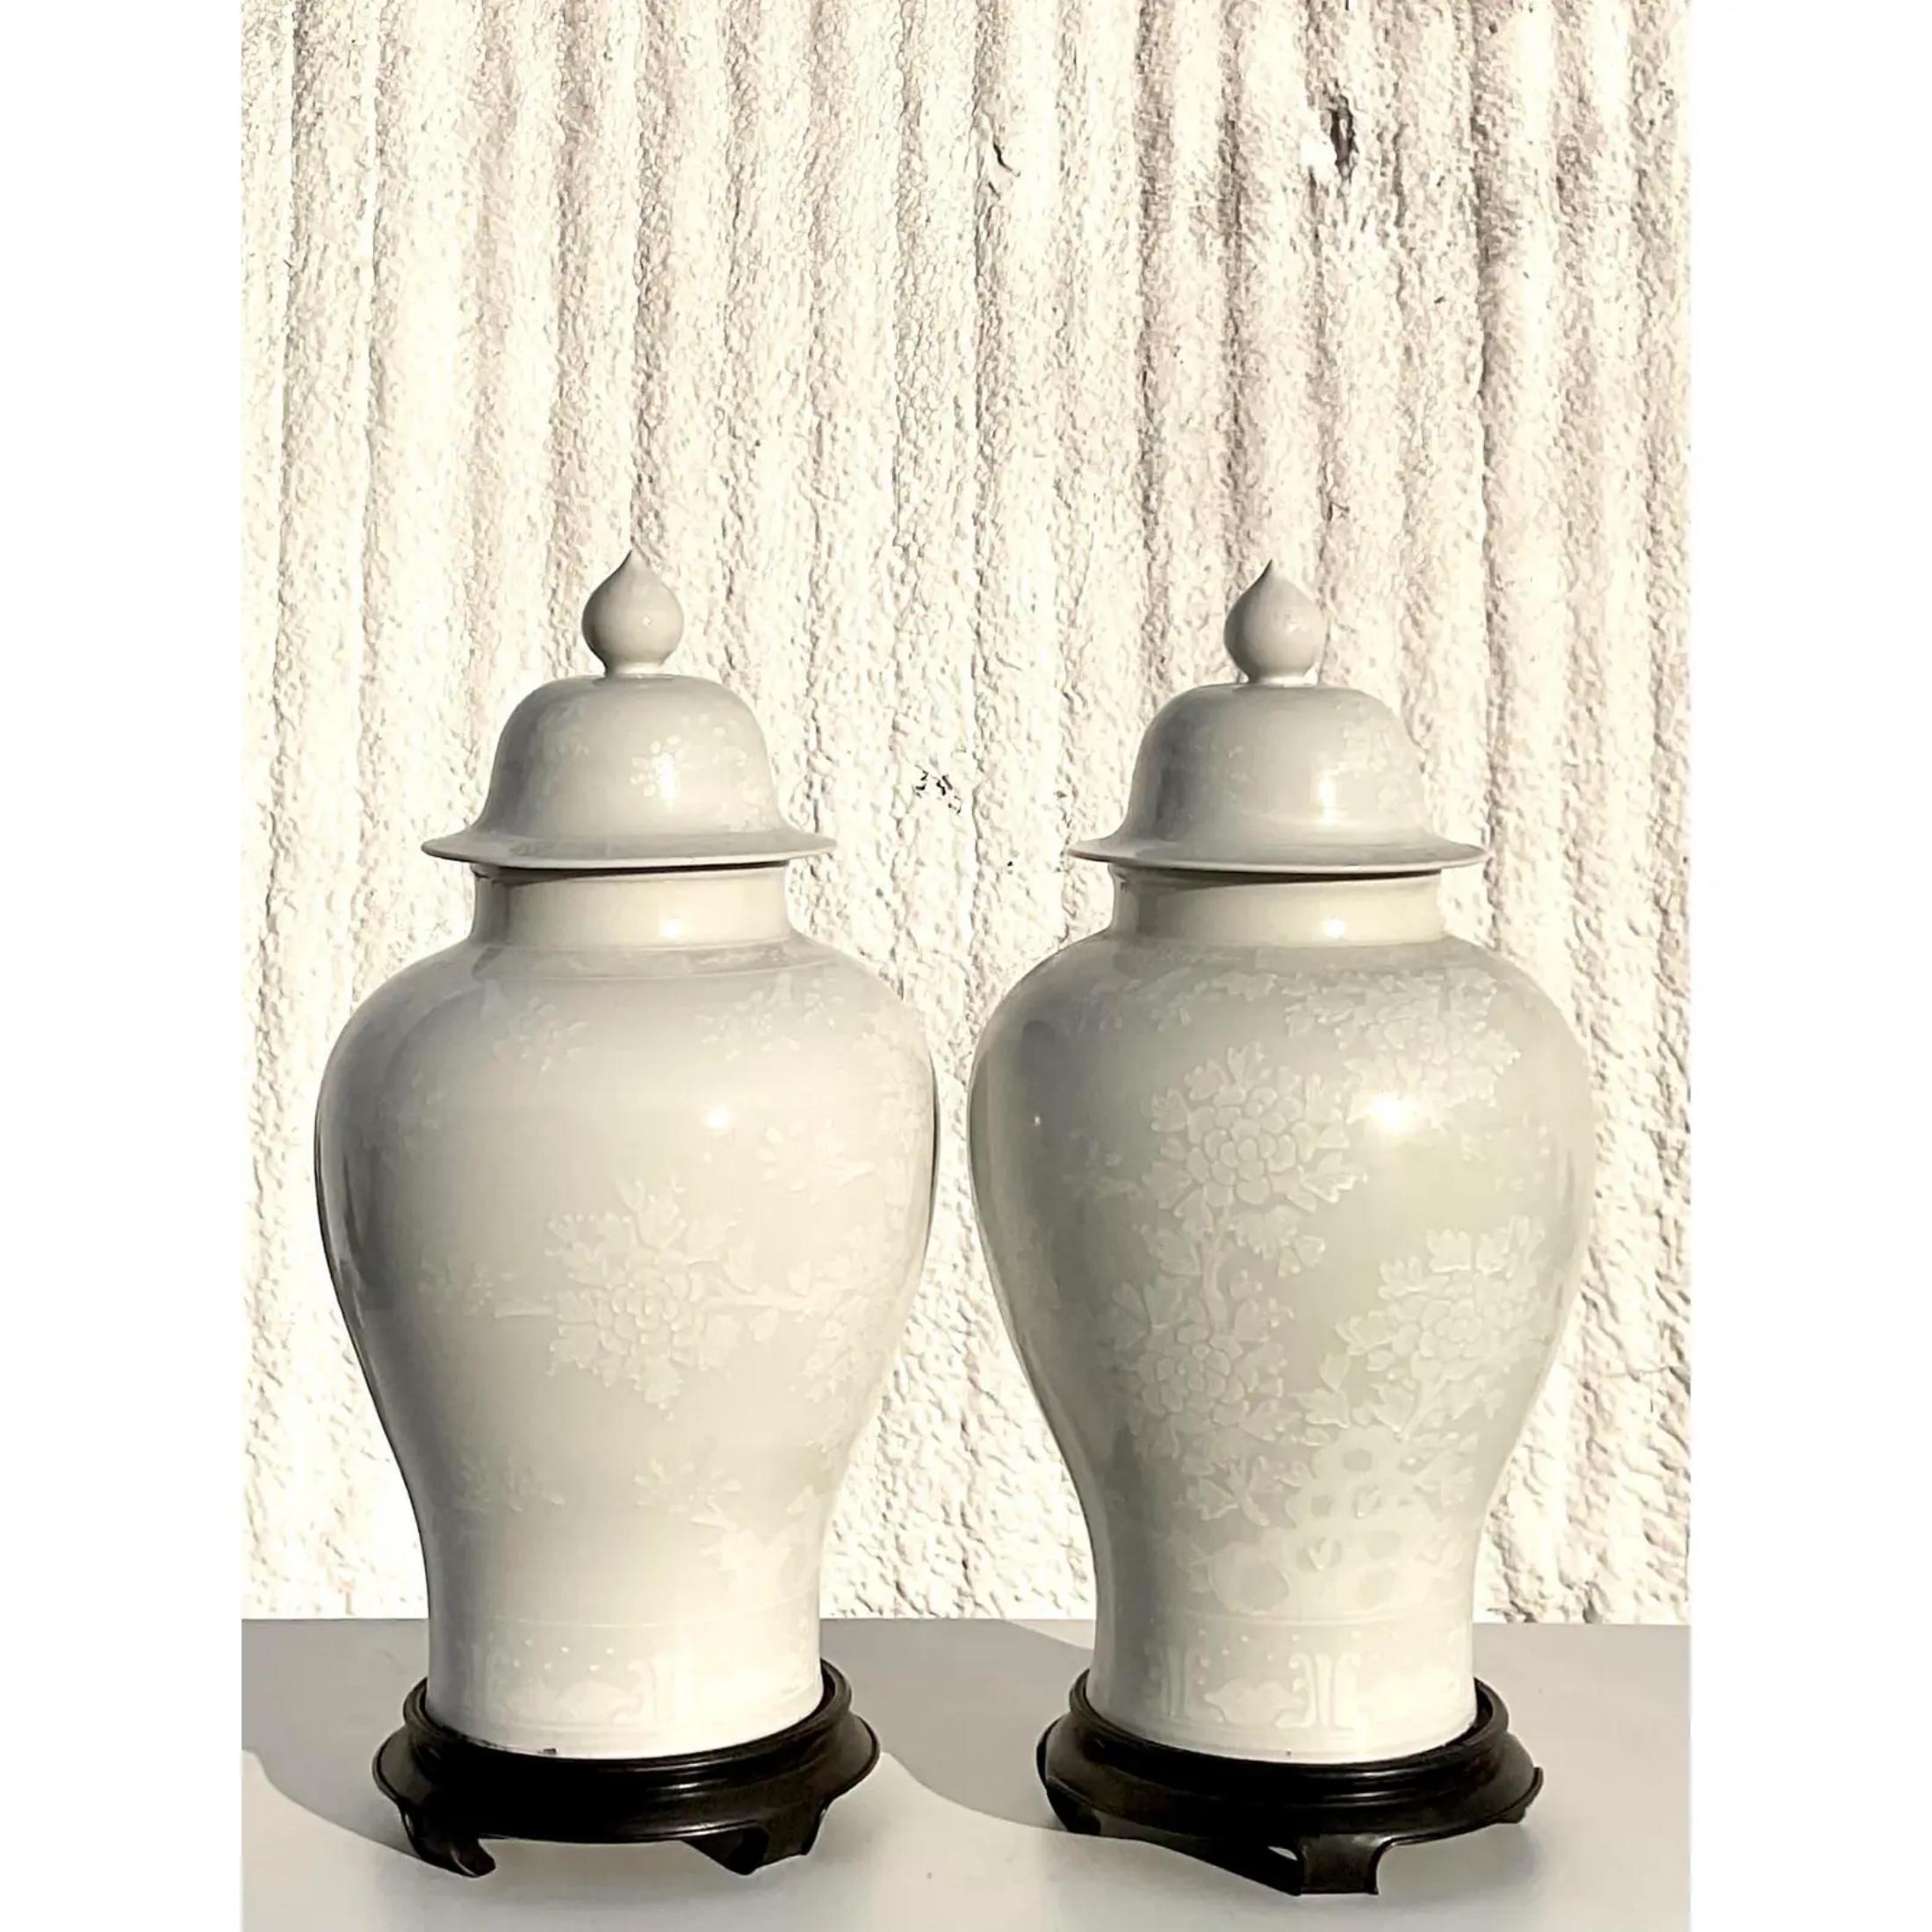 Fabelhaftes Paar weißer asiatischer Ingwer-Urnen. Schönes florales Design Ton in Ton. Sie ruhen auf Sockeln aus Ebenholz. Erworben aus einem Nachlass in Palm Beach